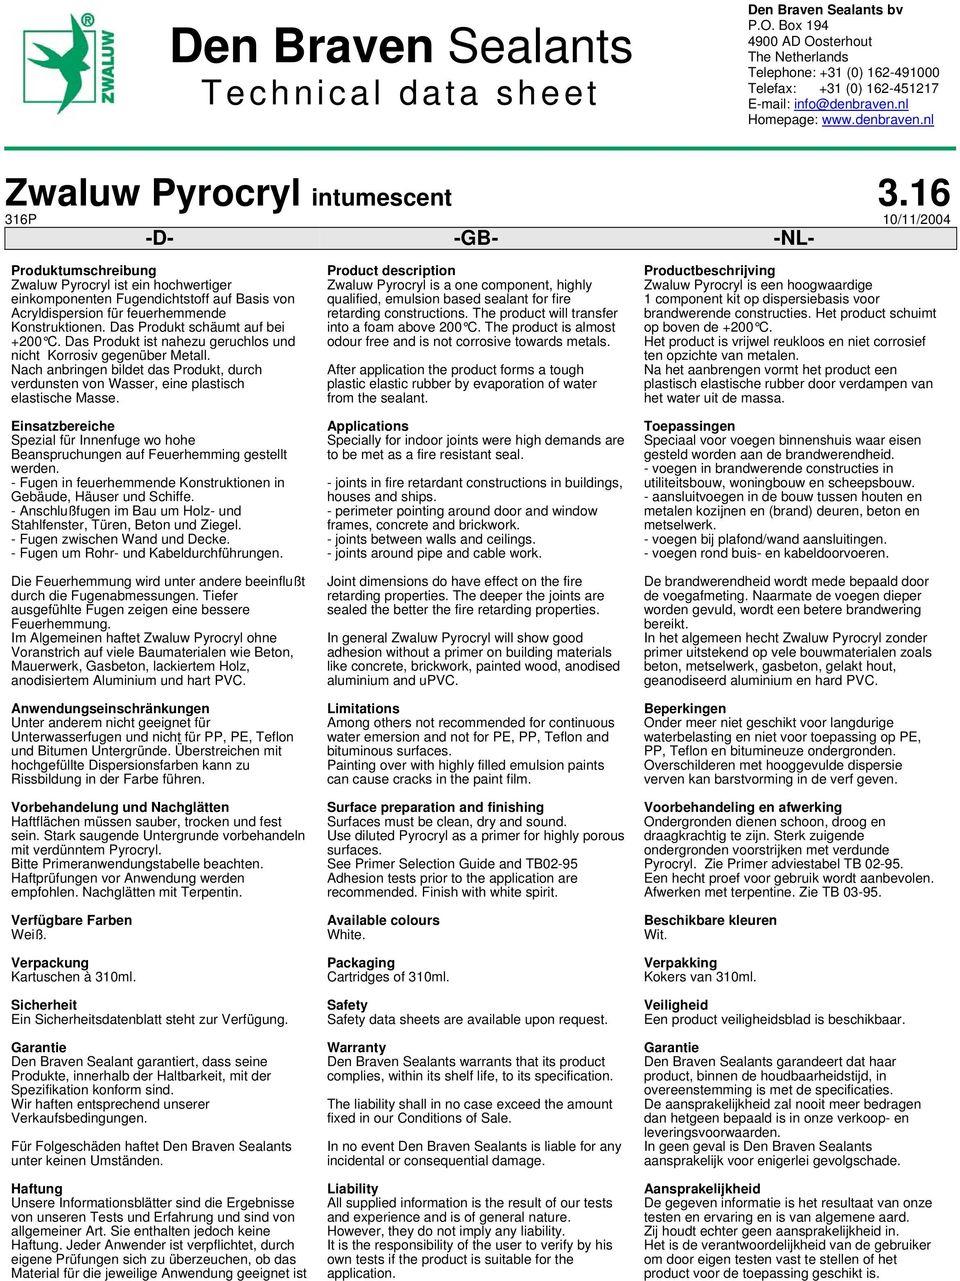 16 316P 10/11/2004 -D- -GB- -NL- Produktumschreibung Zwaluw Pyrocryl ist ein hochwertiger einkomponenten Fugendichtstoff auf Basis von Acryldispersion für feuerhemmende Konstruktionen.